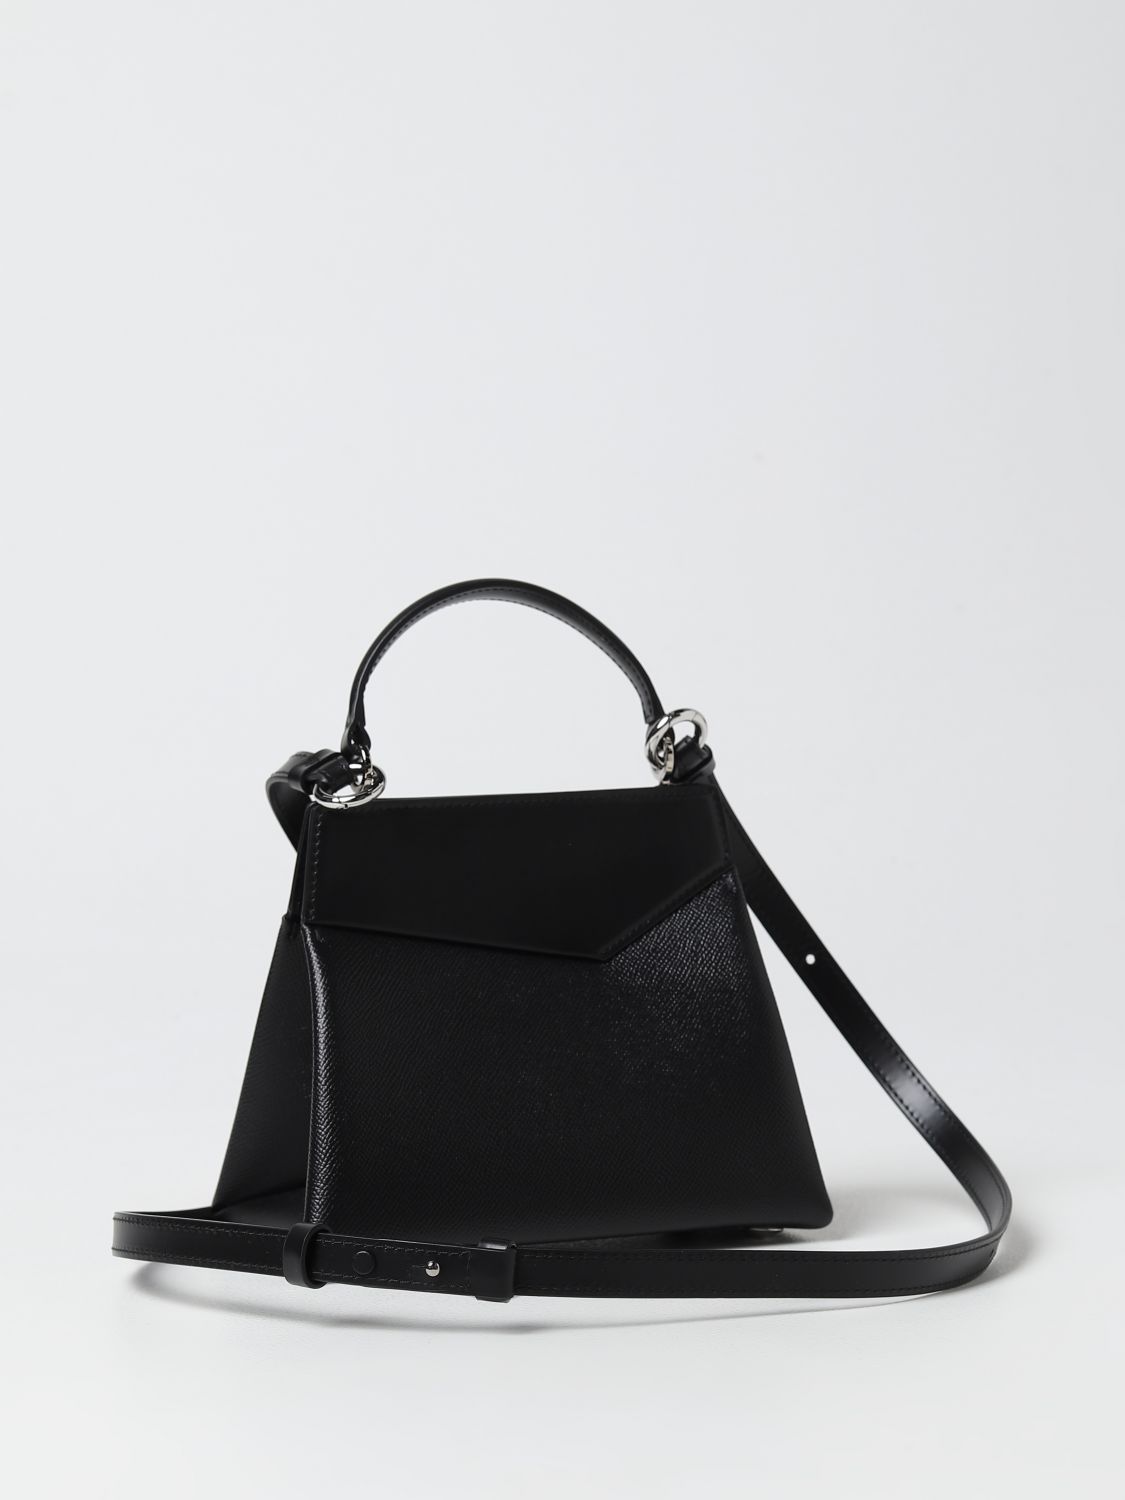 MAISON MARGIELA: mini bag for woman - Violet  Maison Margiela mini bag  S56WG0168P4745 online at